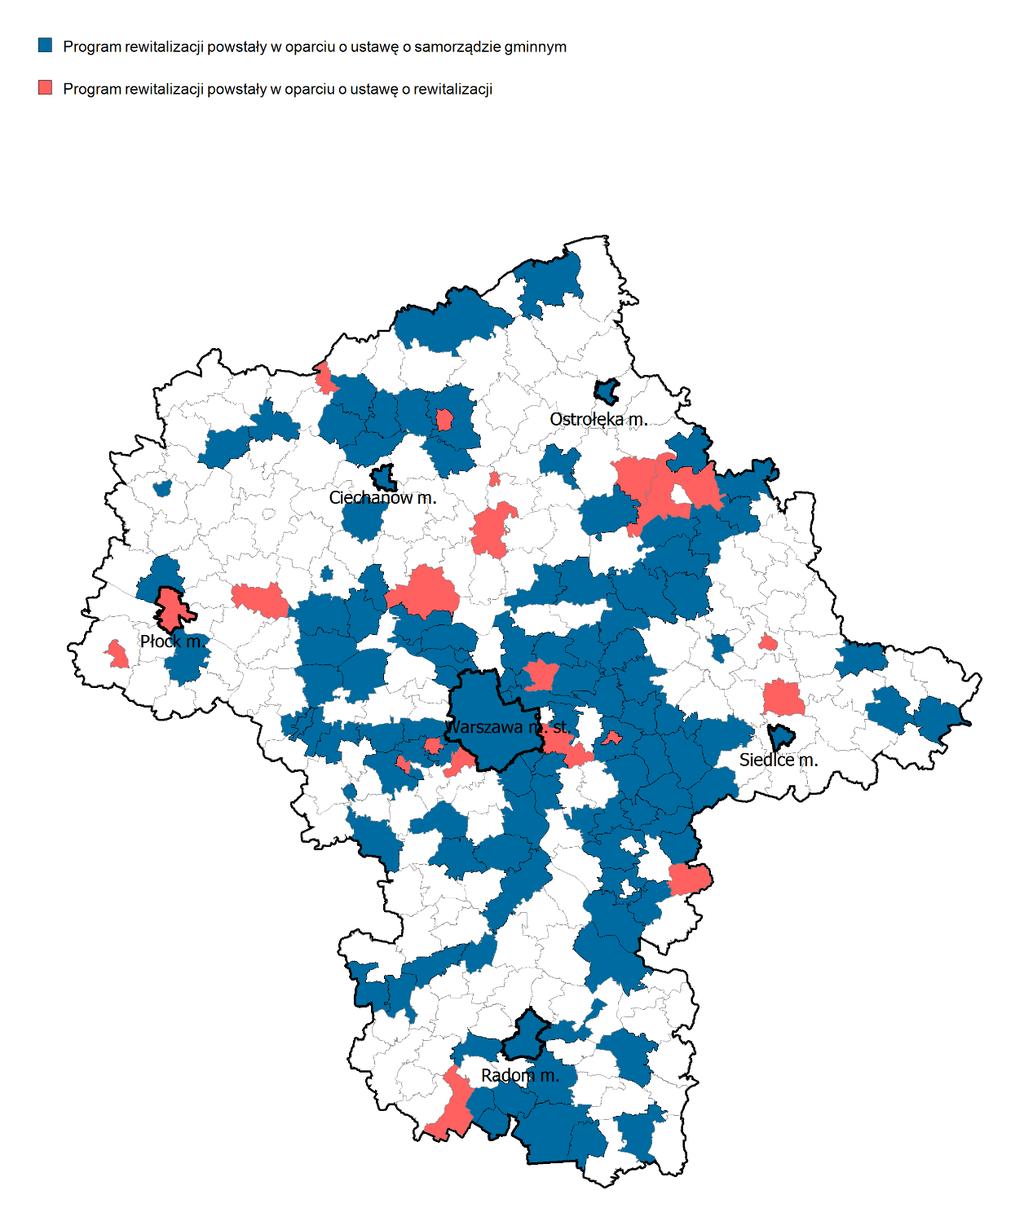 Wykaz programów rewitalizacji województwa mazowieckiego 138 gmin ma PR wpisane do wykazu programów rewitalizacji województwa mazowieckiego, w tym: 19 gminnych